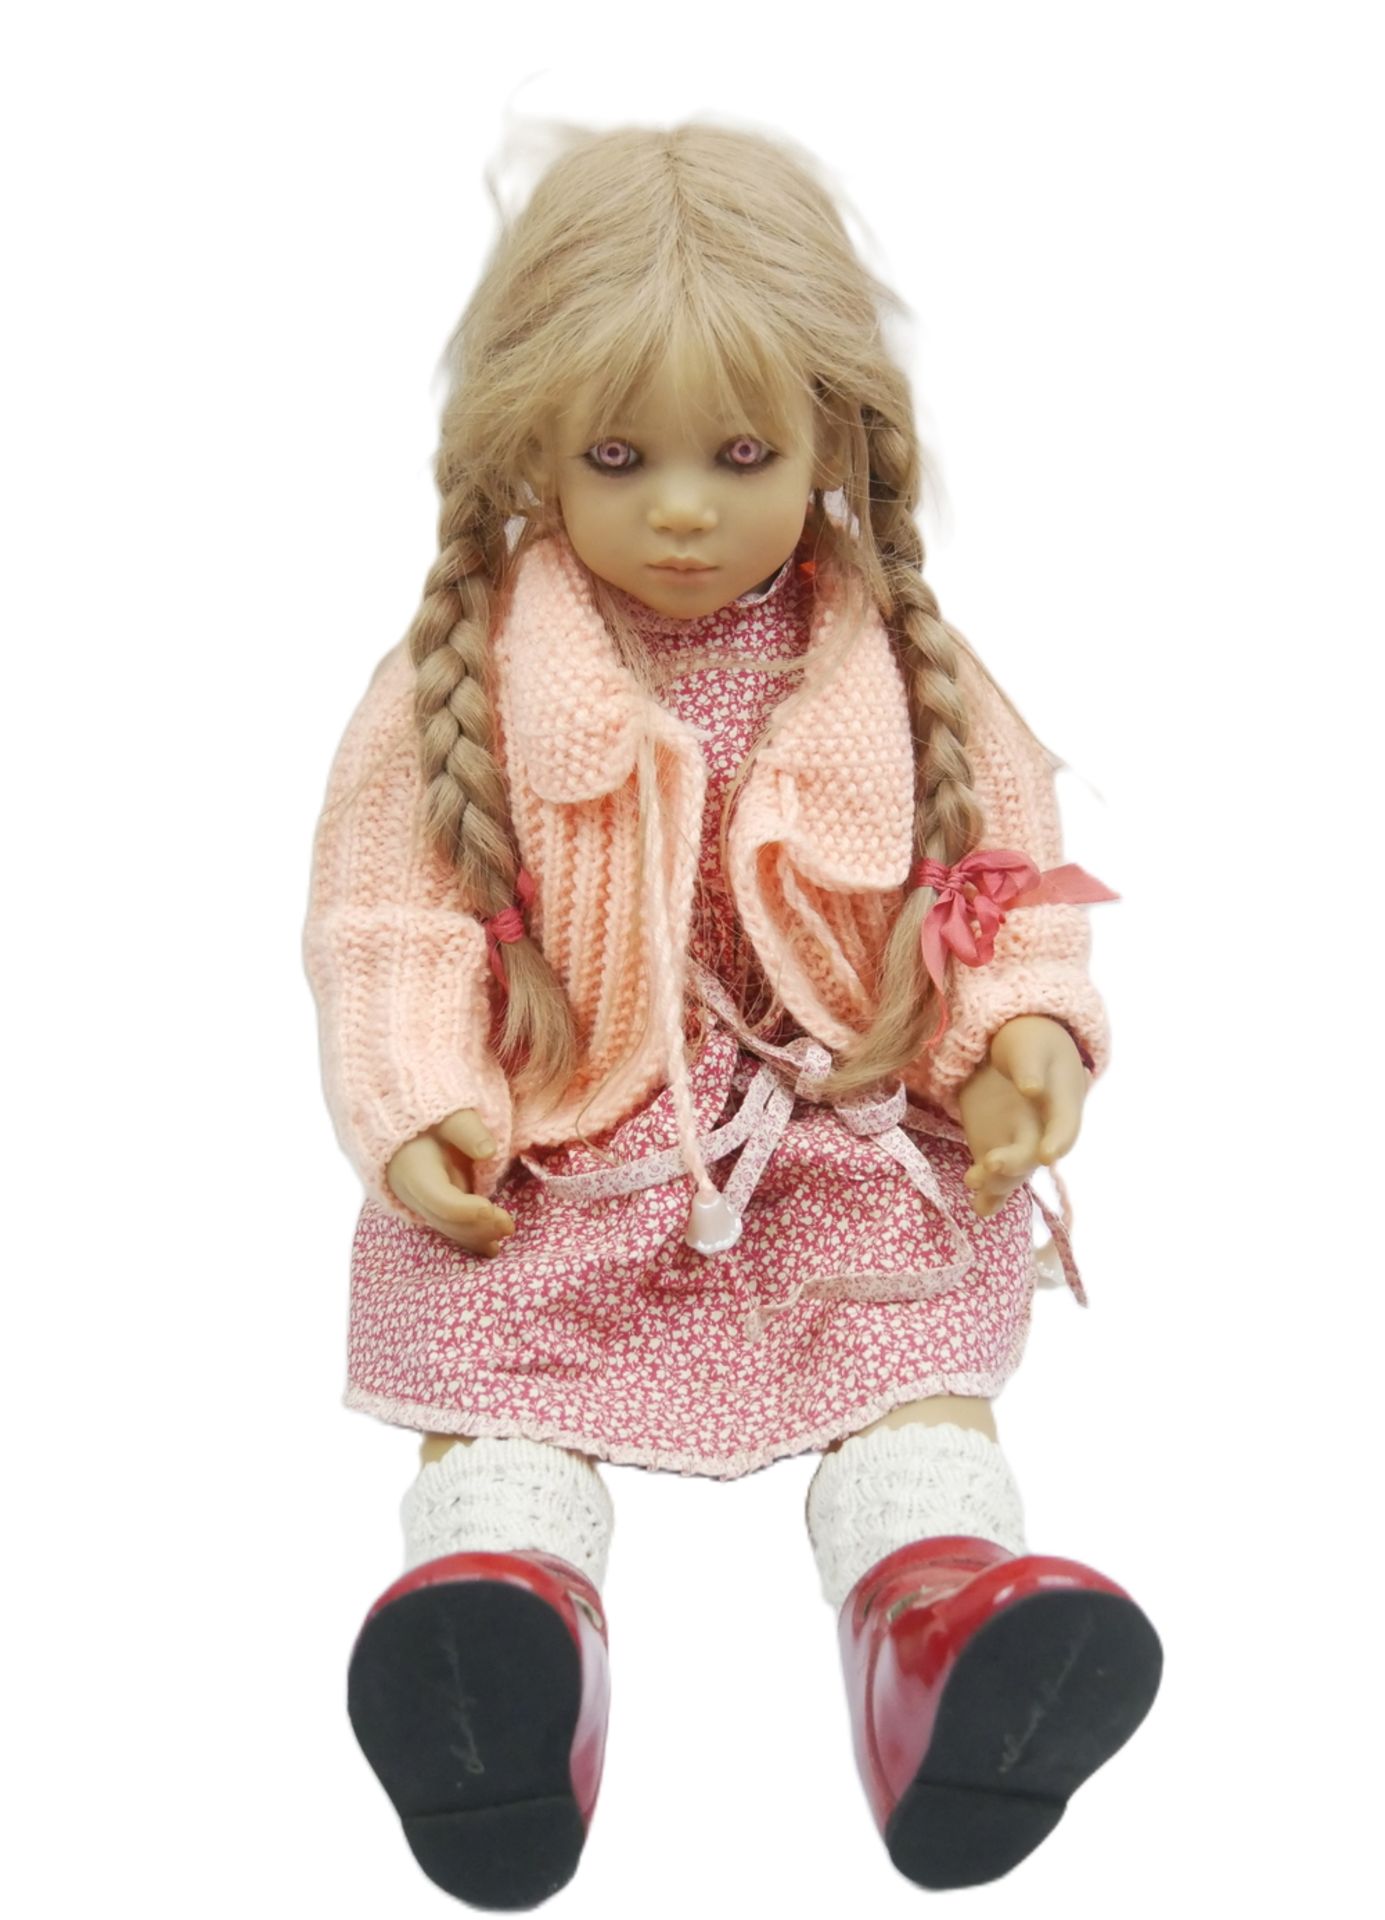 Annette Himstedt Puppe Anna, hergestellt 1998/99, Pk VI. Höhe ca. 67 cm. Mit pinkfarbenen Augen.